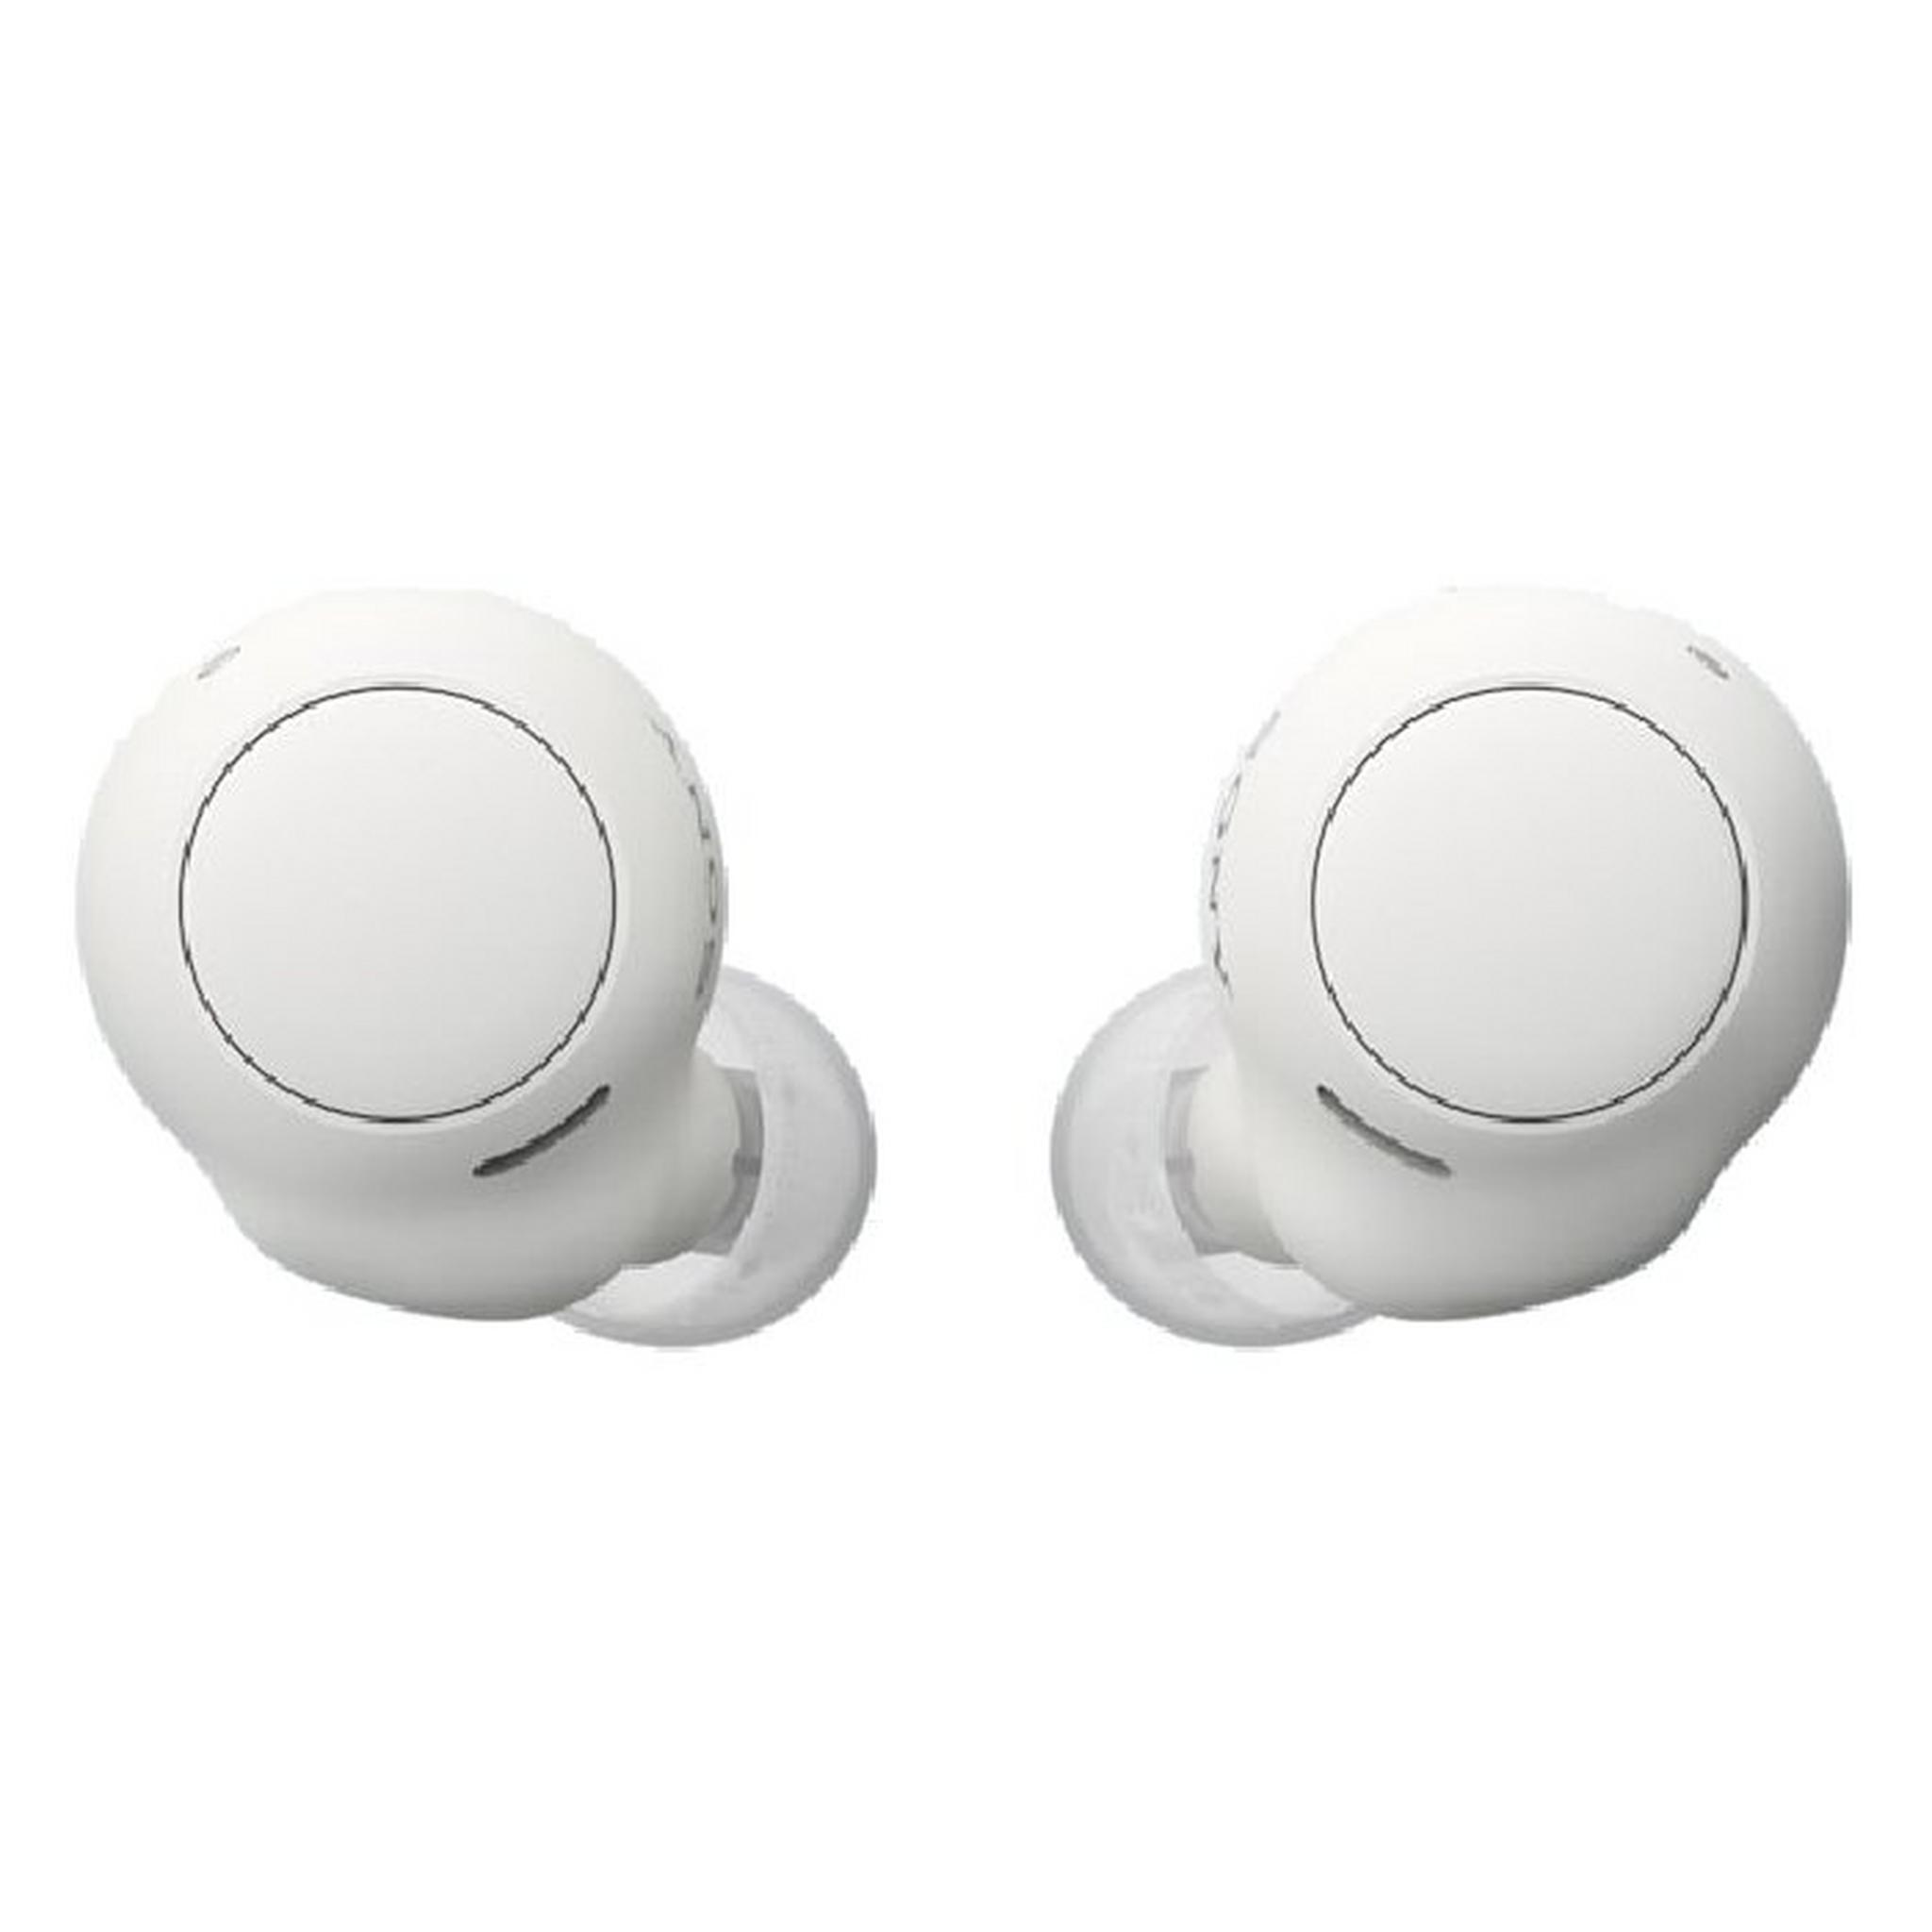 Sony WF-C500 Wireless Bluetooth Earbuds - White